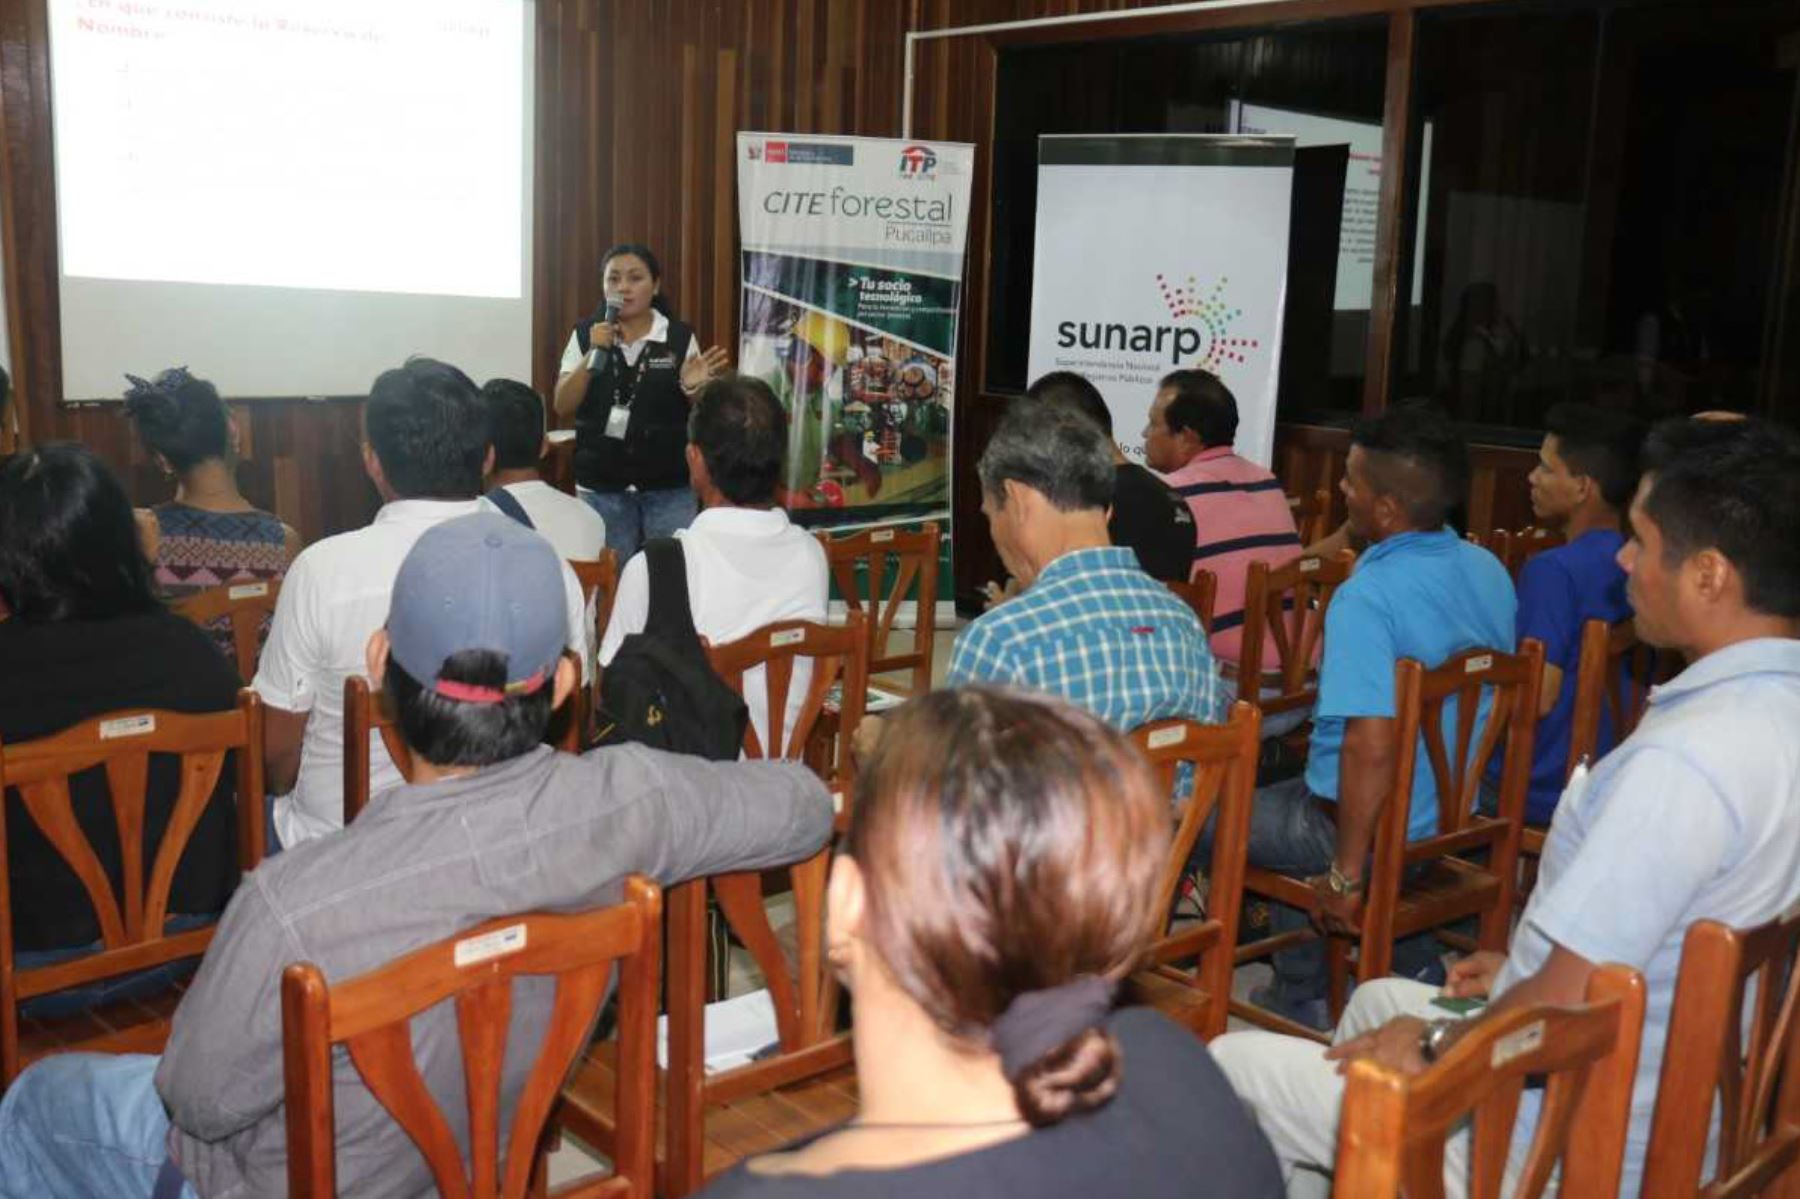 Como parte del programa de inclusión registral “Sunarp Emprendedor”, empresarios y emprendedores dedicados al sector de la madera de la ciudad de Pucallpa recibieron asesoría sobre los mecanismos legales y registrales que viabilicen su formalización.